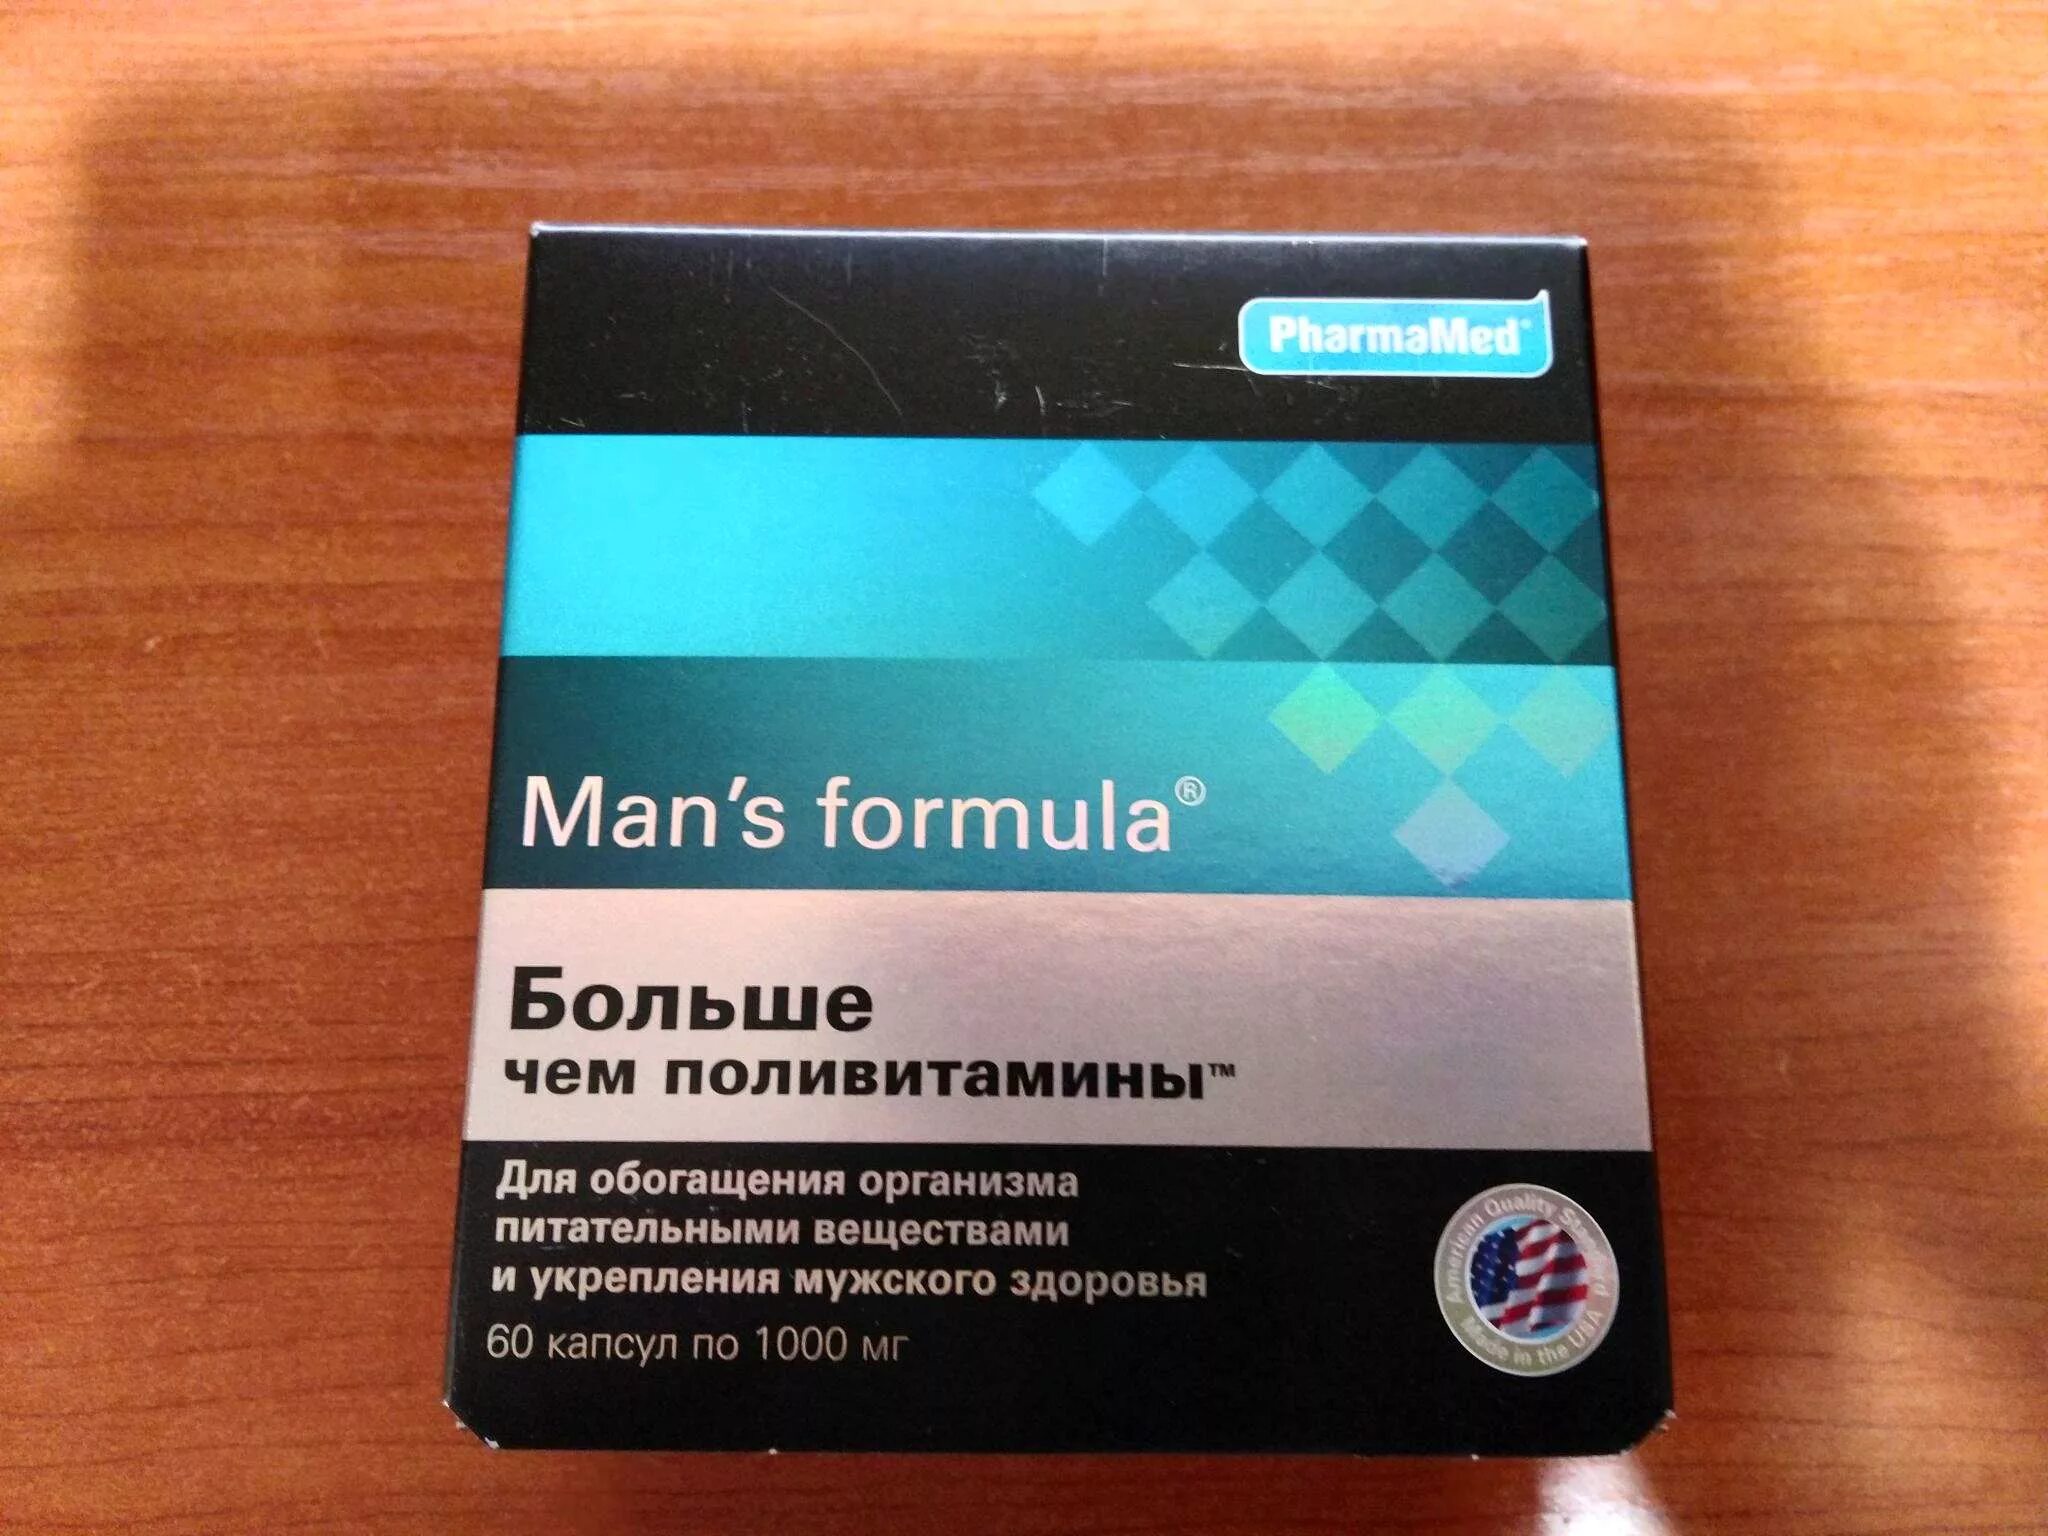 Менс потенциал форте. Mans Formula витамины для мужчин. Formula man's (больше,чем поливитамины капс n60 Вн ). Витамины man's Formula потенциал форте. Менс формула для мужчин больше чем